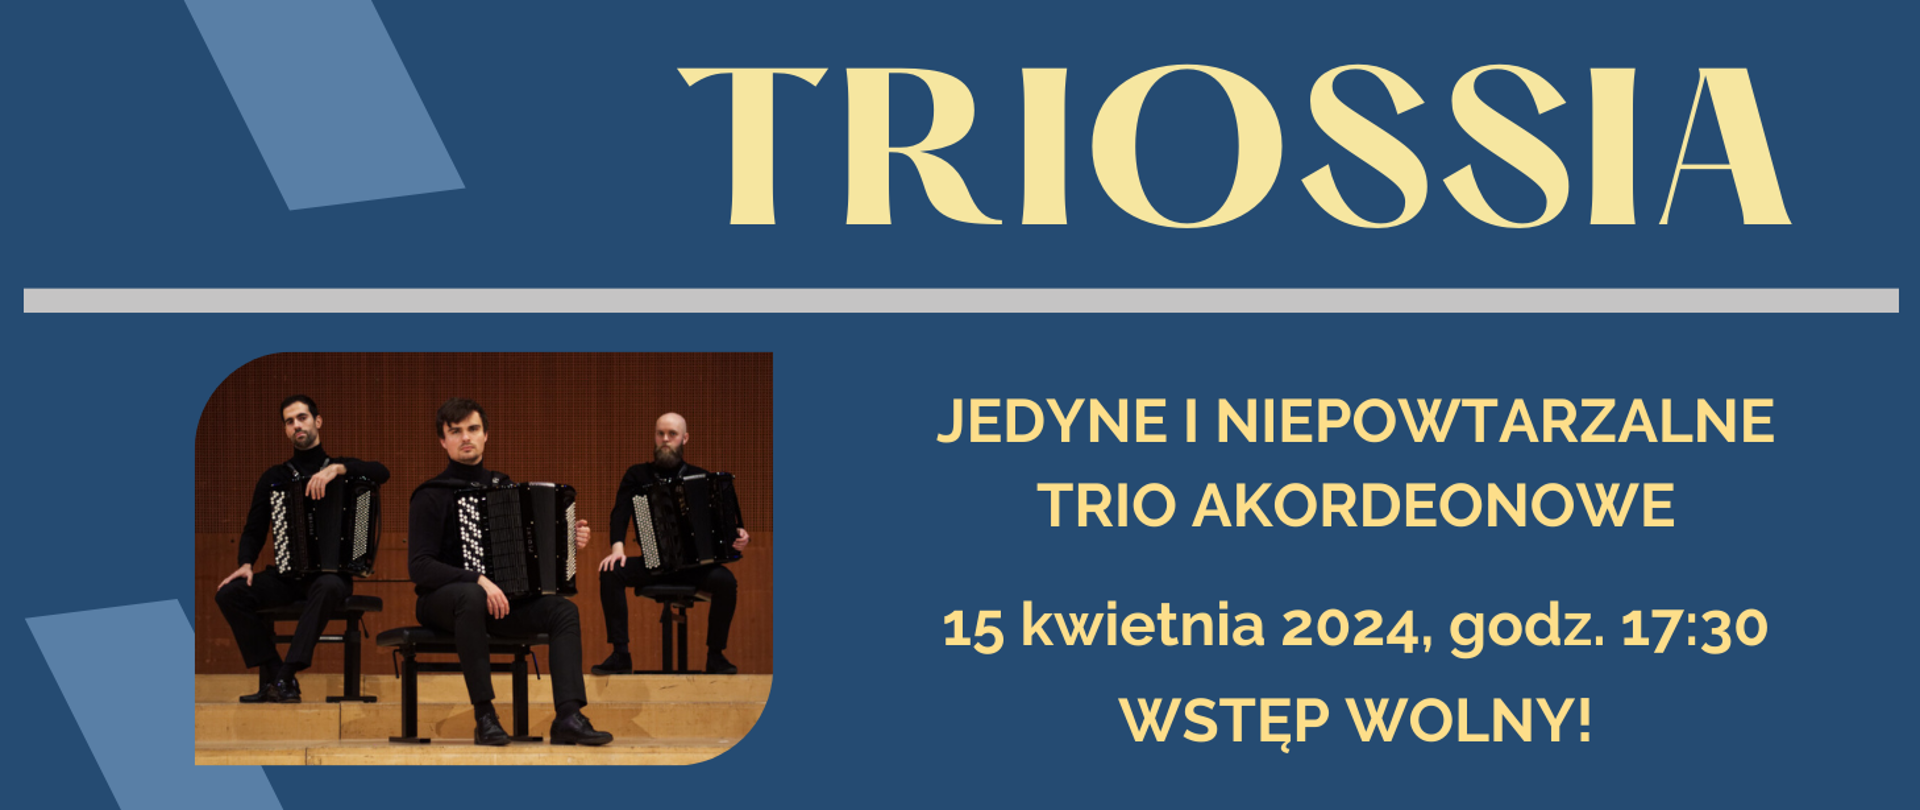 na niebieskim tle kremowy napis: TRIOSSIA jedyne i niepowtarzalne trio akordeonowe; poniżej data koncertu oraz informacja o wstępie wolnym; z lewej strony u dołu zdjęcie tria Triossia